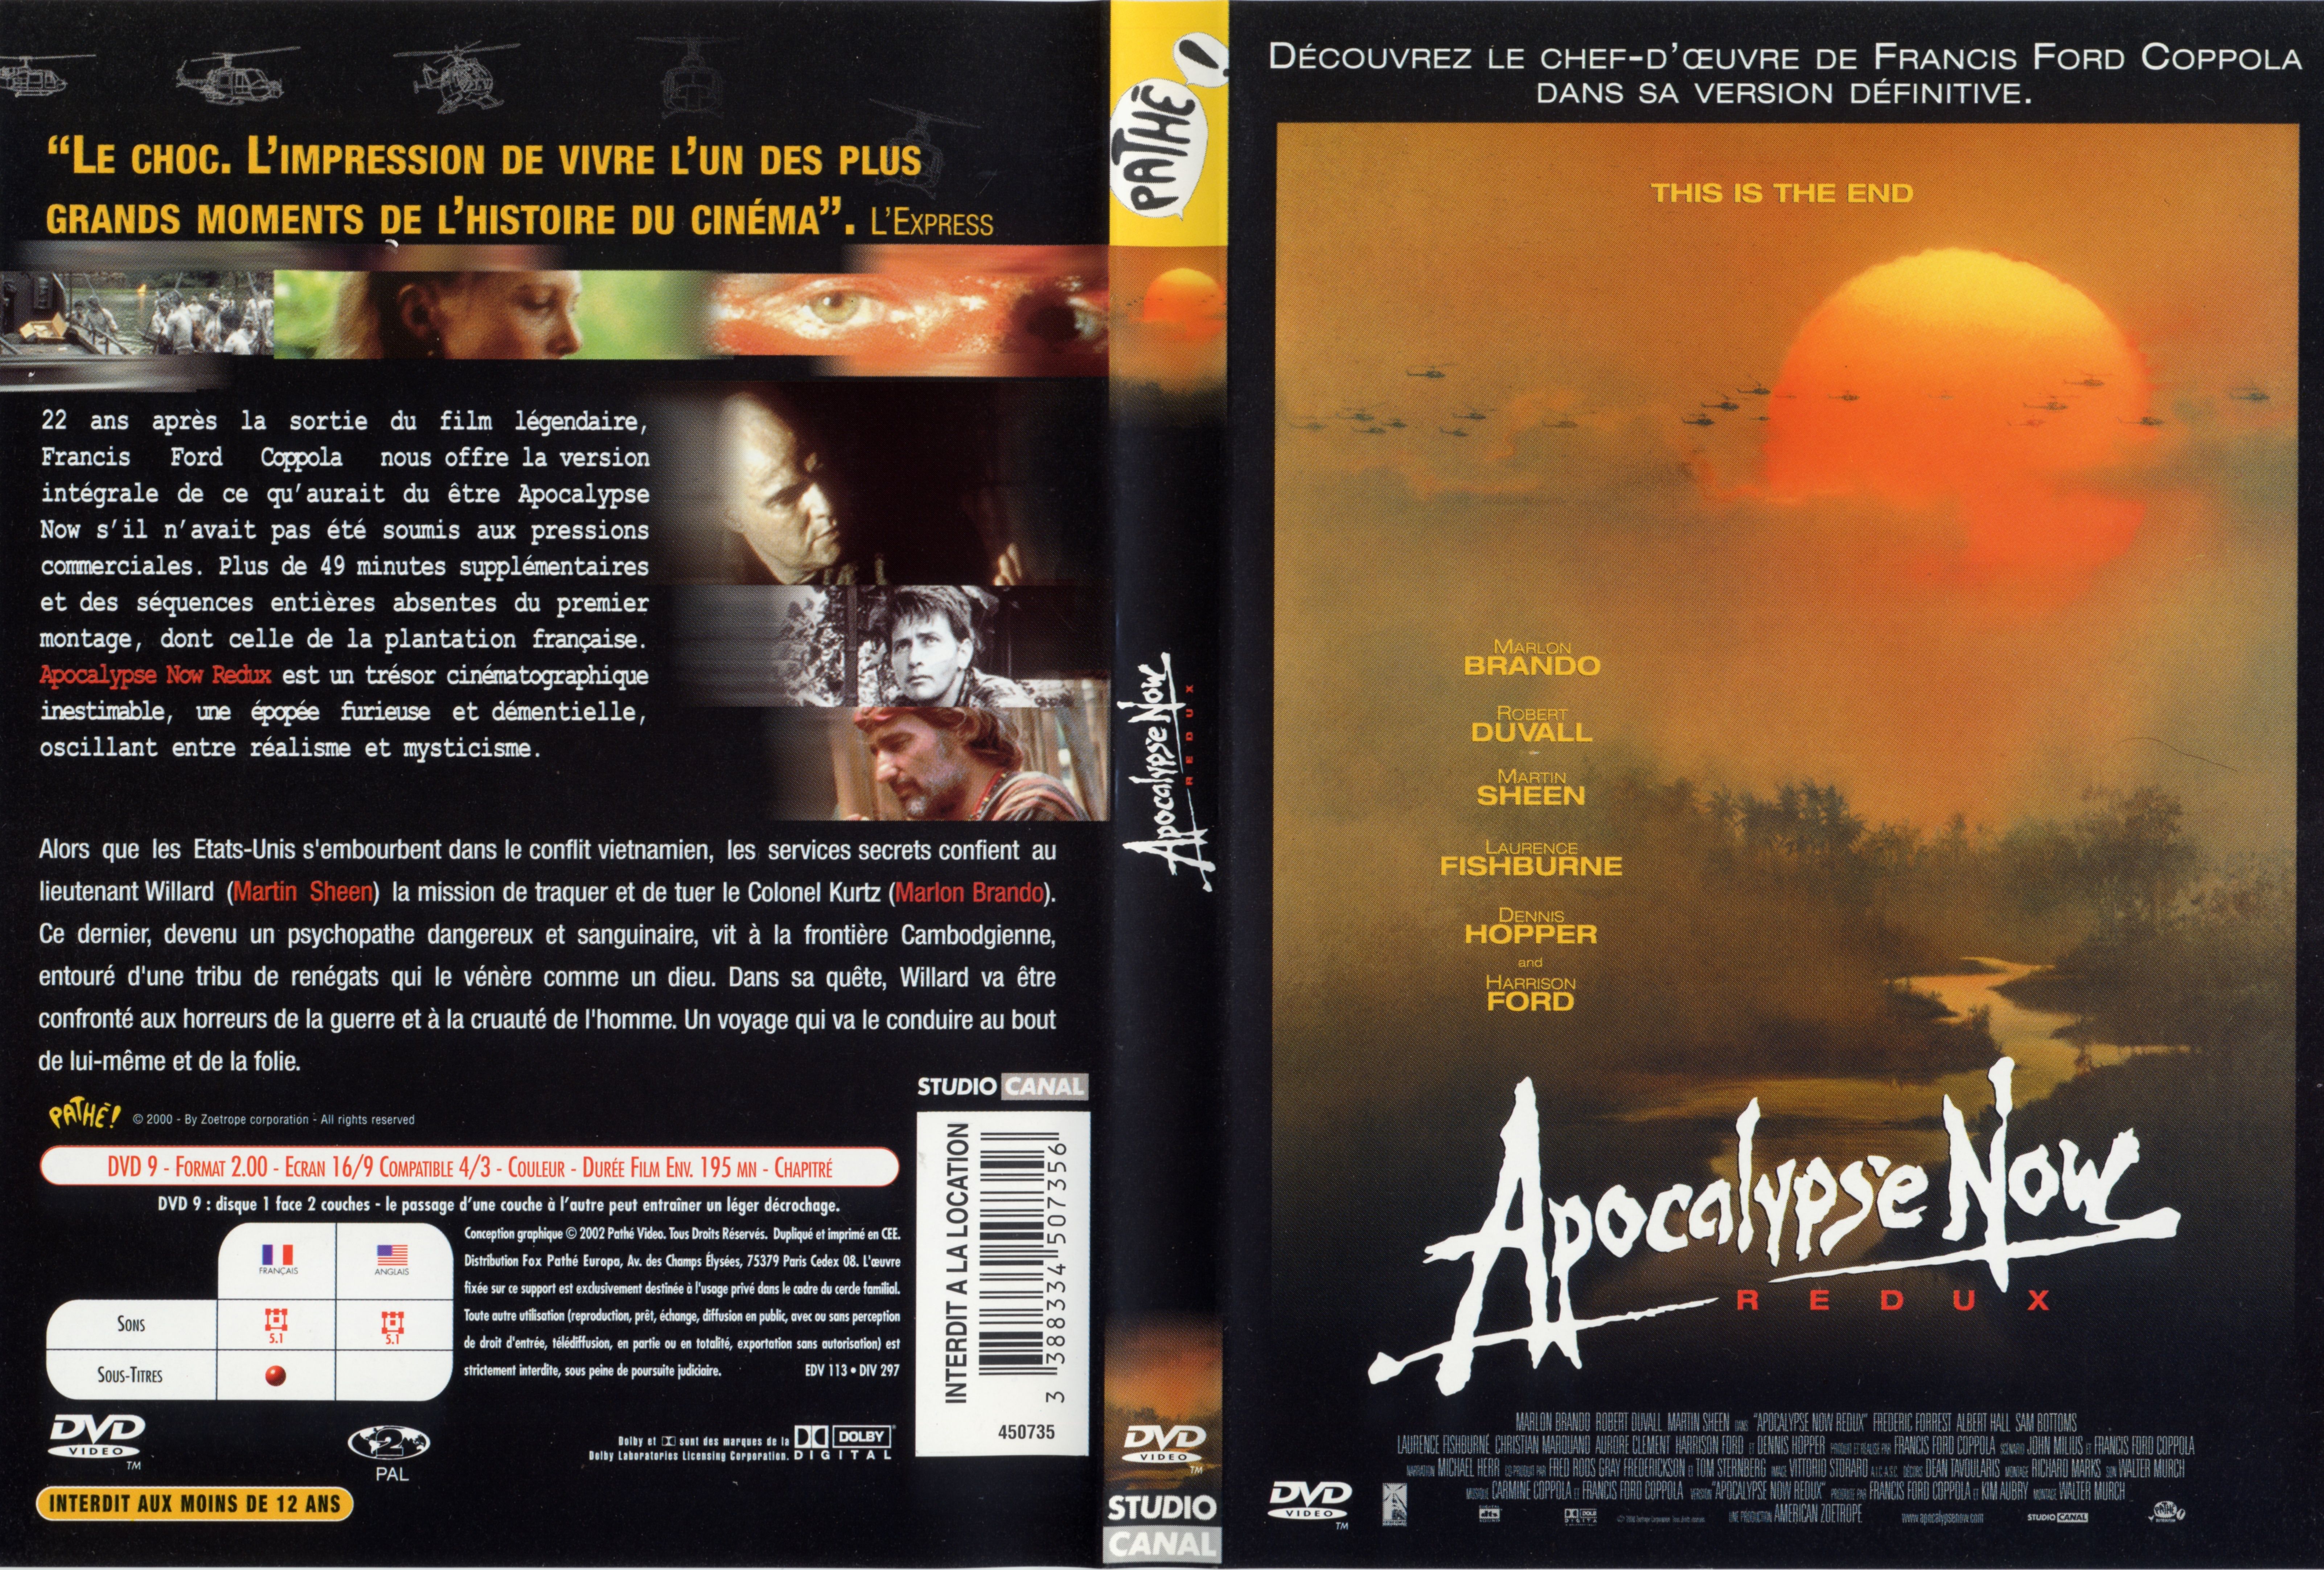 Jaquette DVD Apocalypse now redux